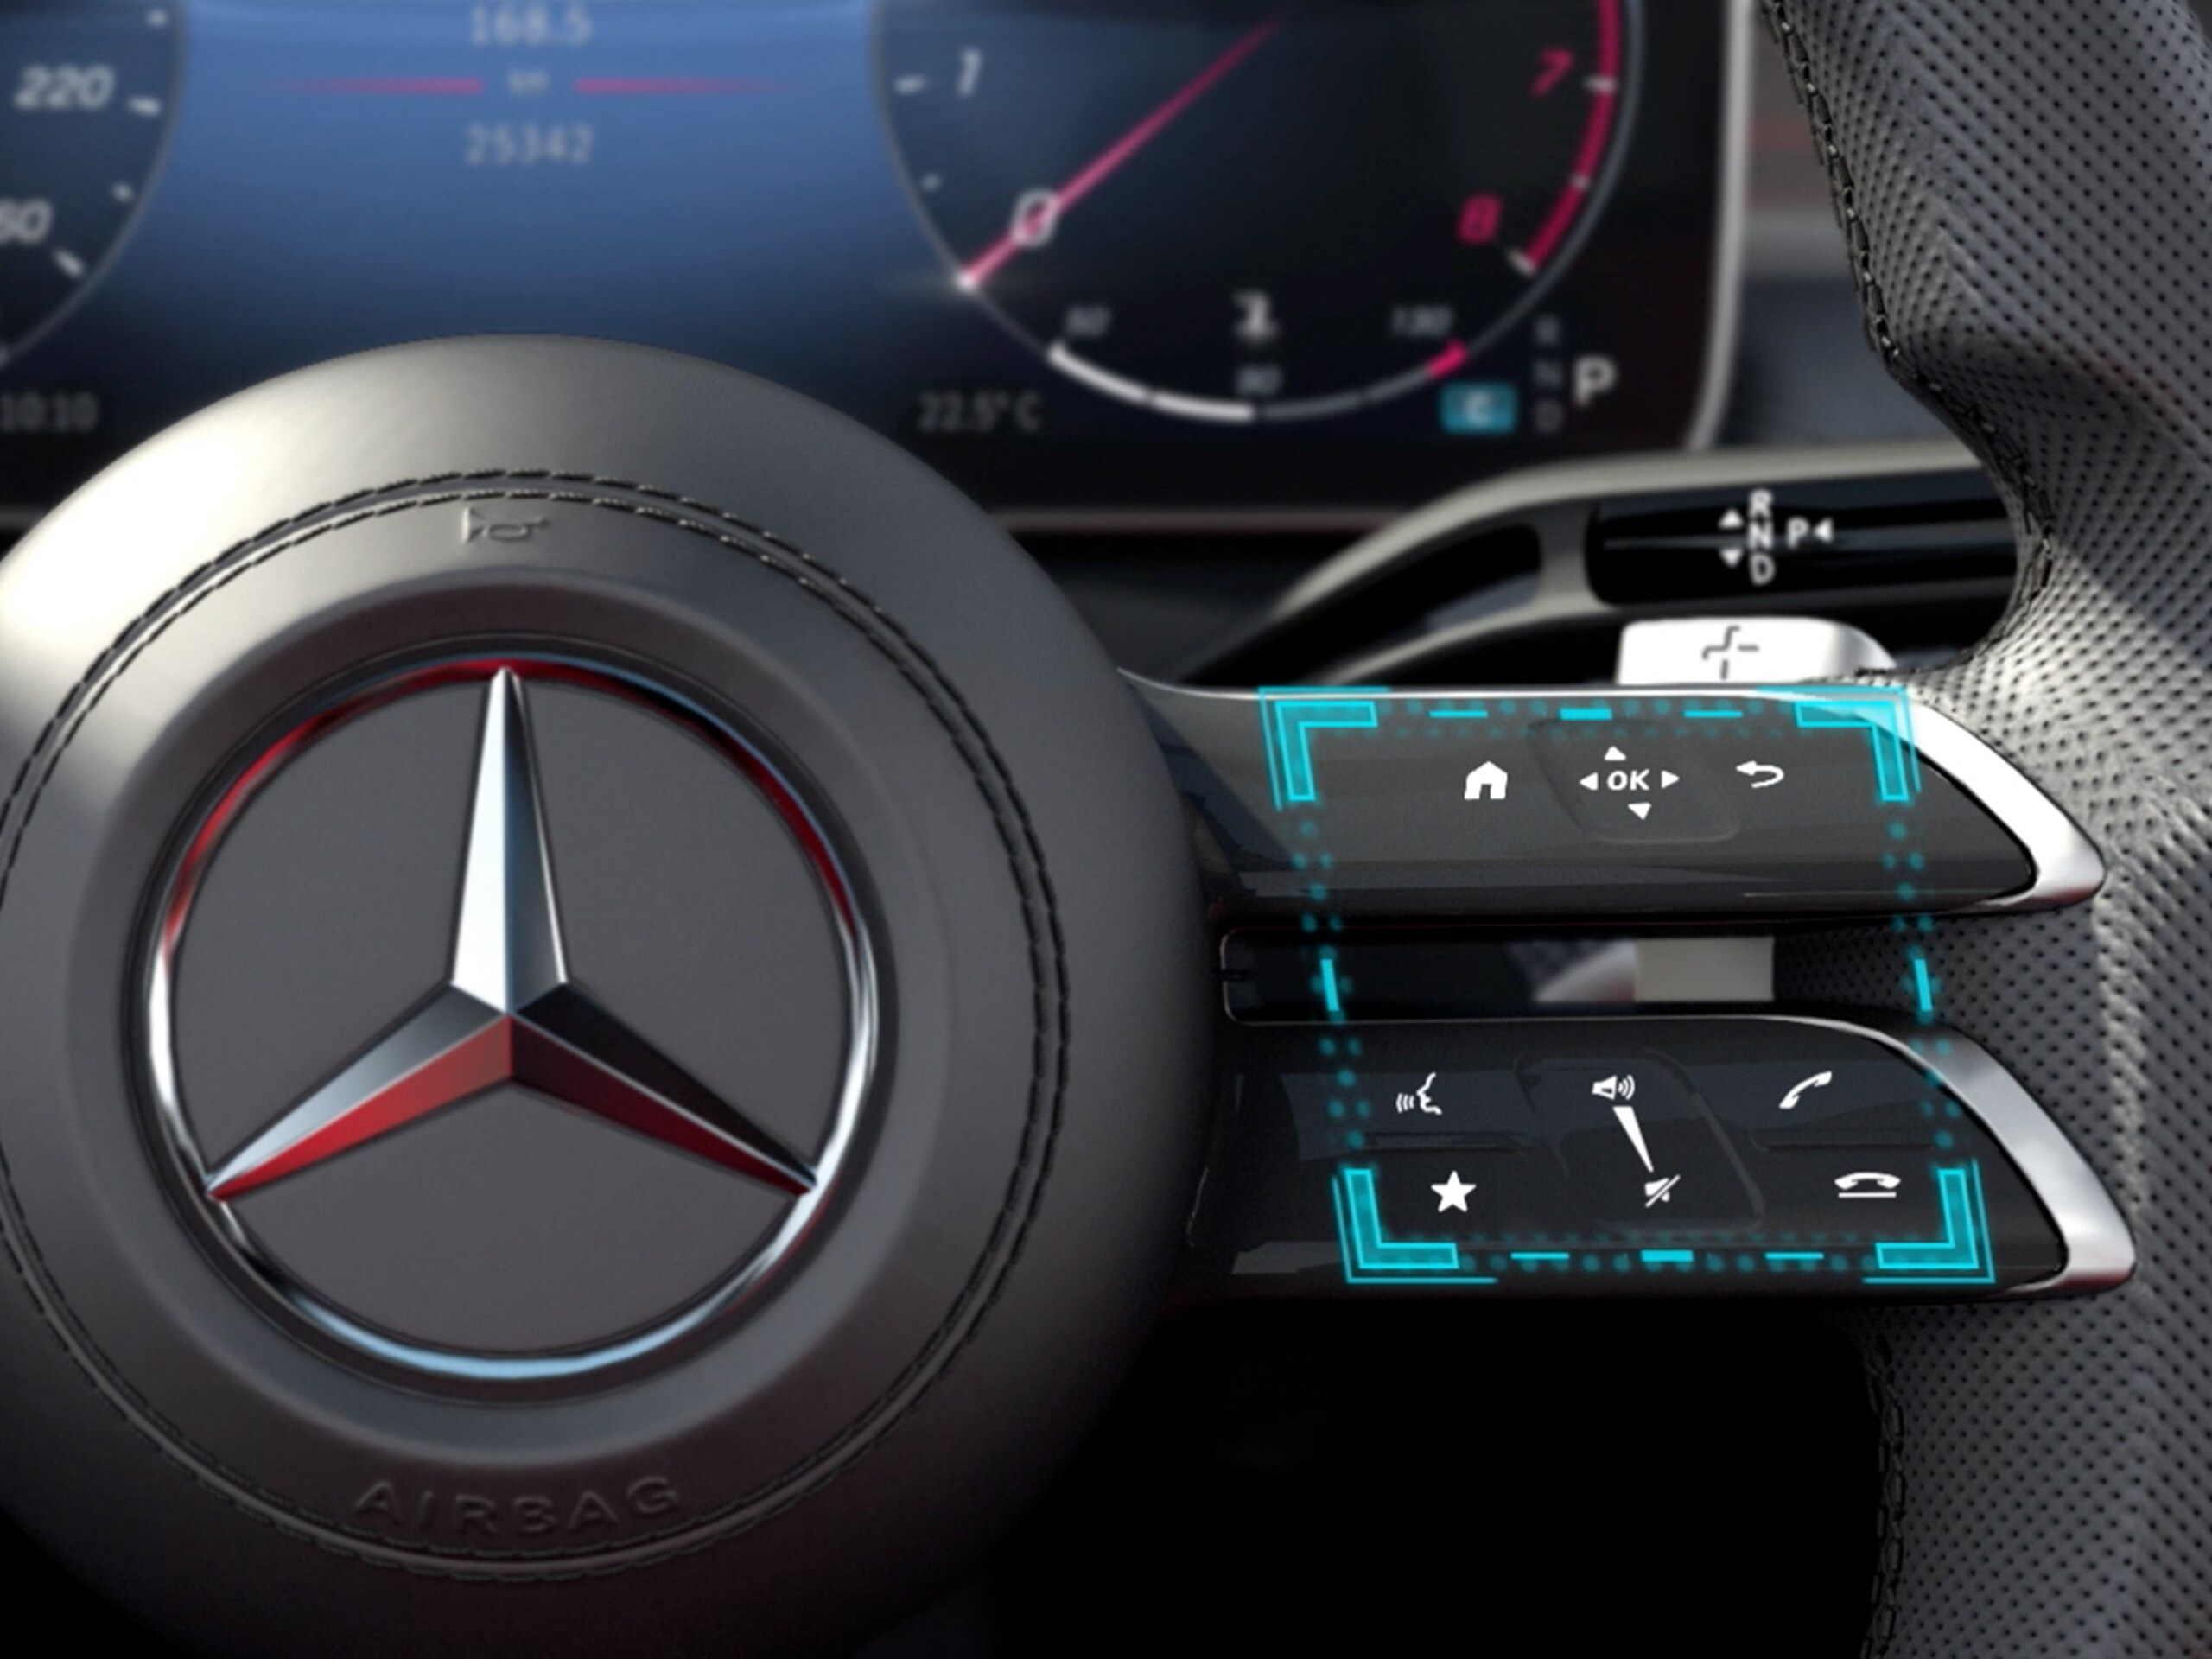 A videón a Mercedes-Benz C-osztály limuzin MBUX érintésvezérelt kezelési koncepció működése látható.